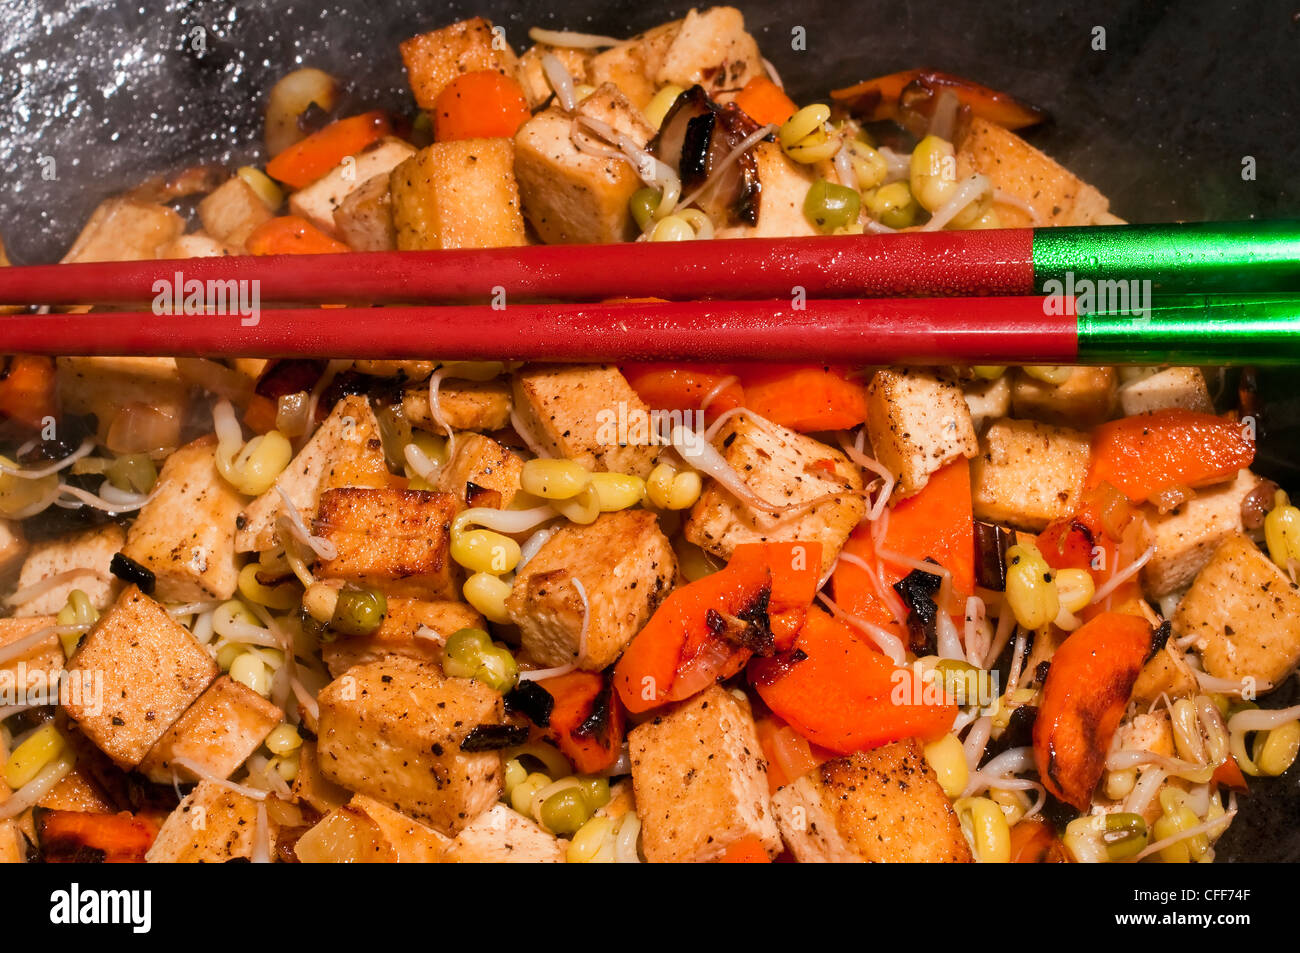 Chinesischer Wok mit Karotten, Tofu, Soja-Sprossen Stockfotografie - Alamy